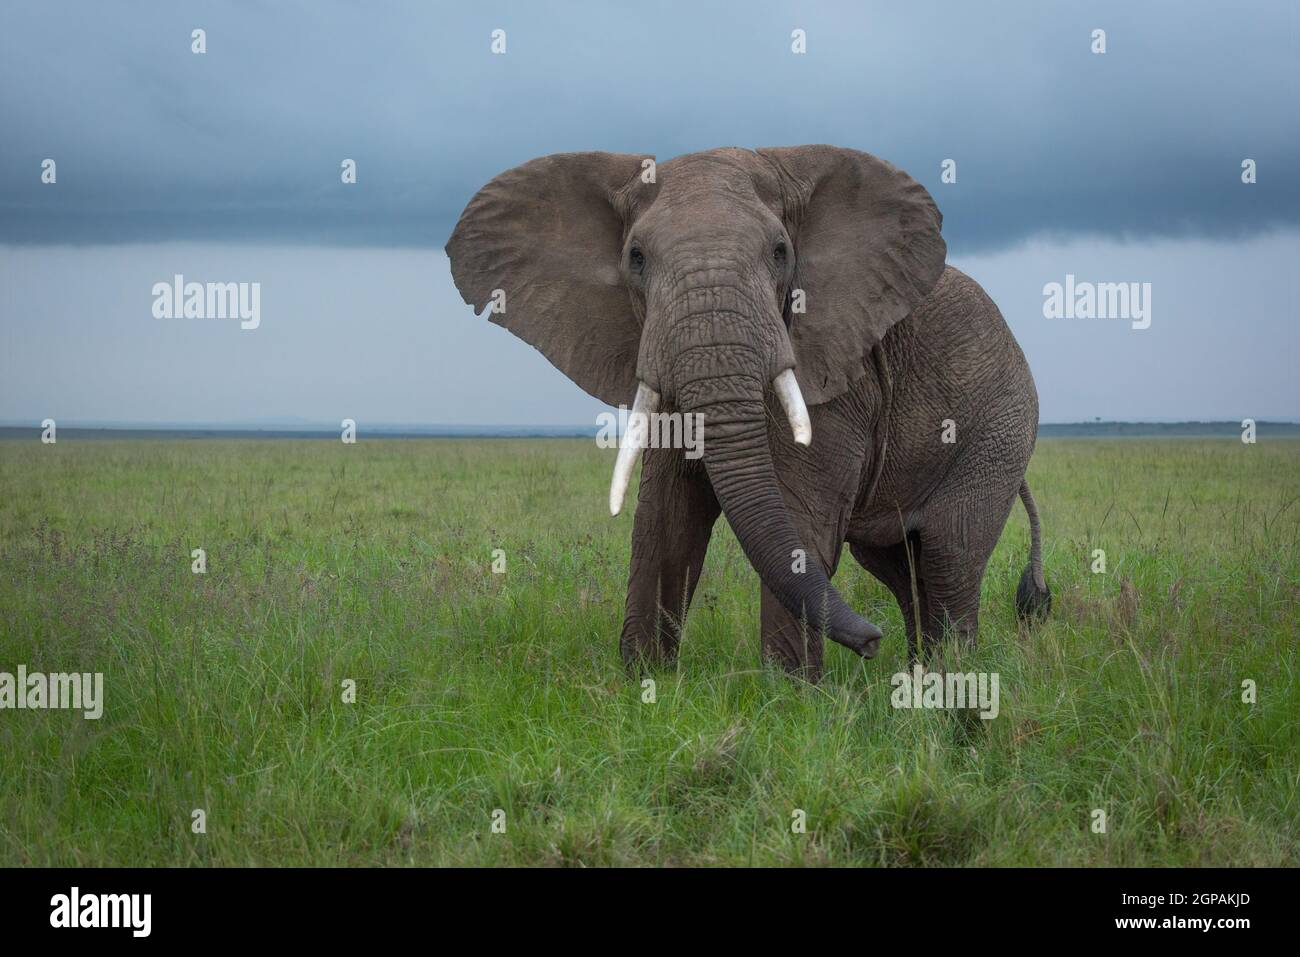 El elefante arbusto africano oscila el tronco en la sabana Foto de stock